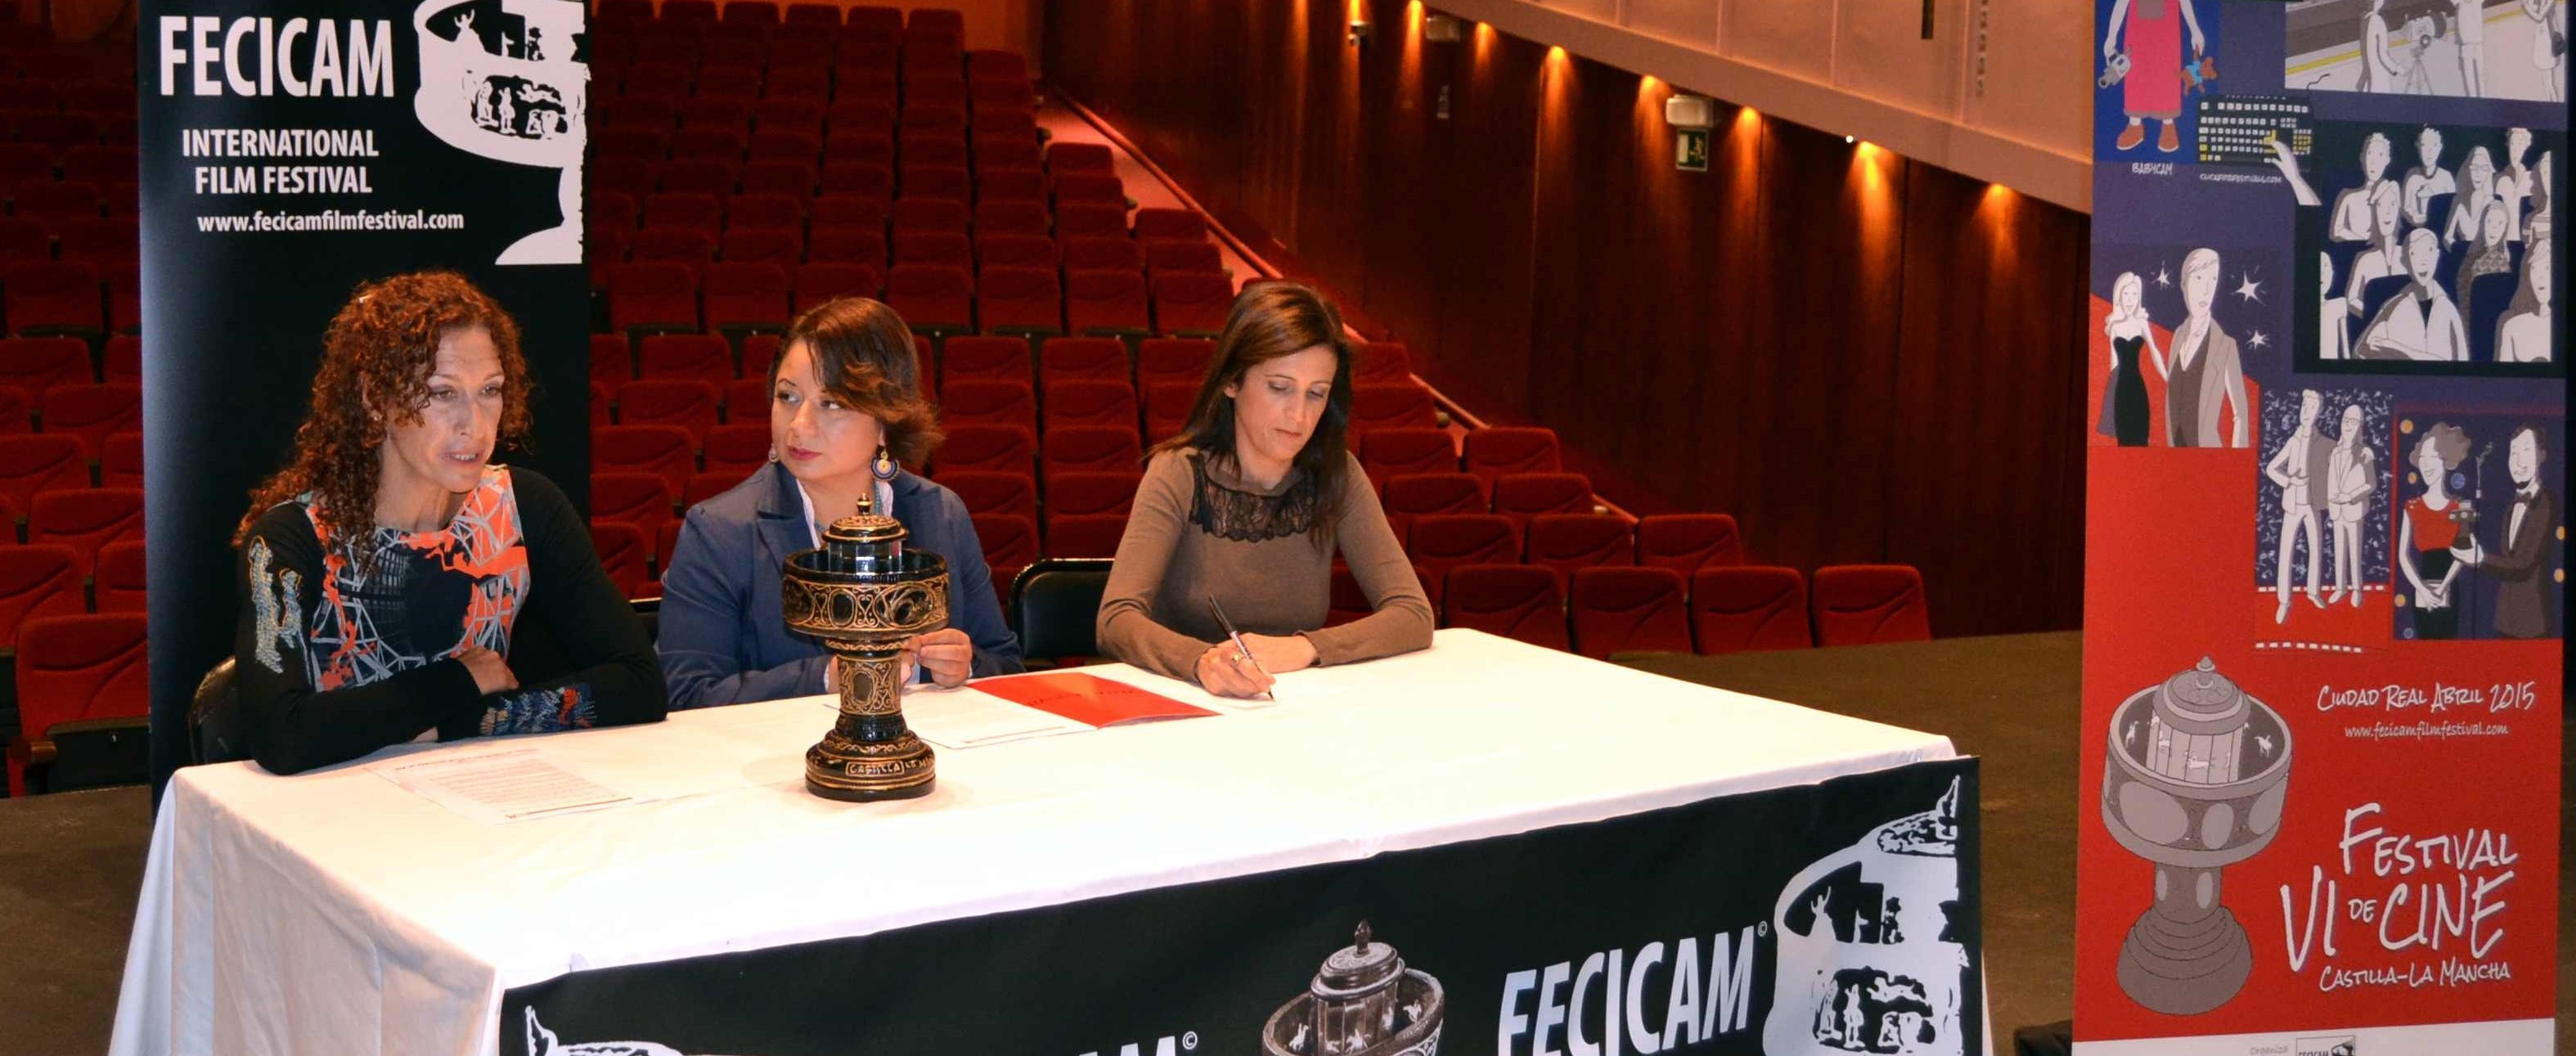 La 6ª edición del Festival de Cine de Castilla-La Mancha, FECICAM se celebrará los días 23, 24 y 25 de abril